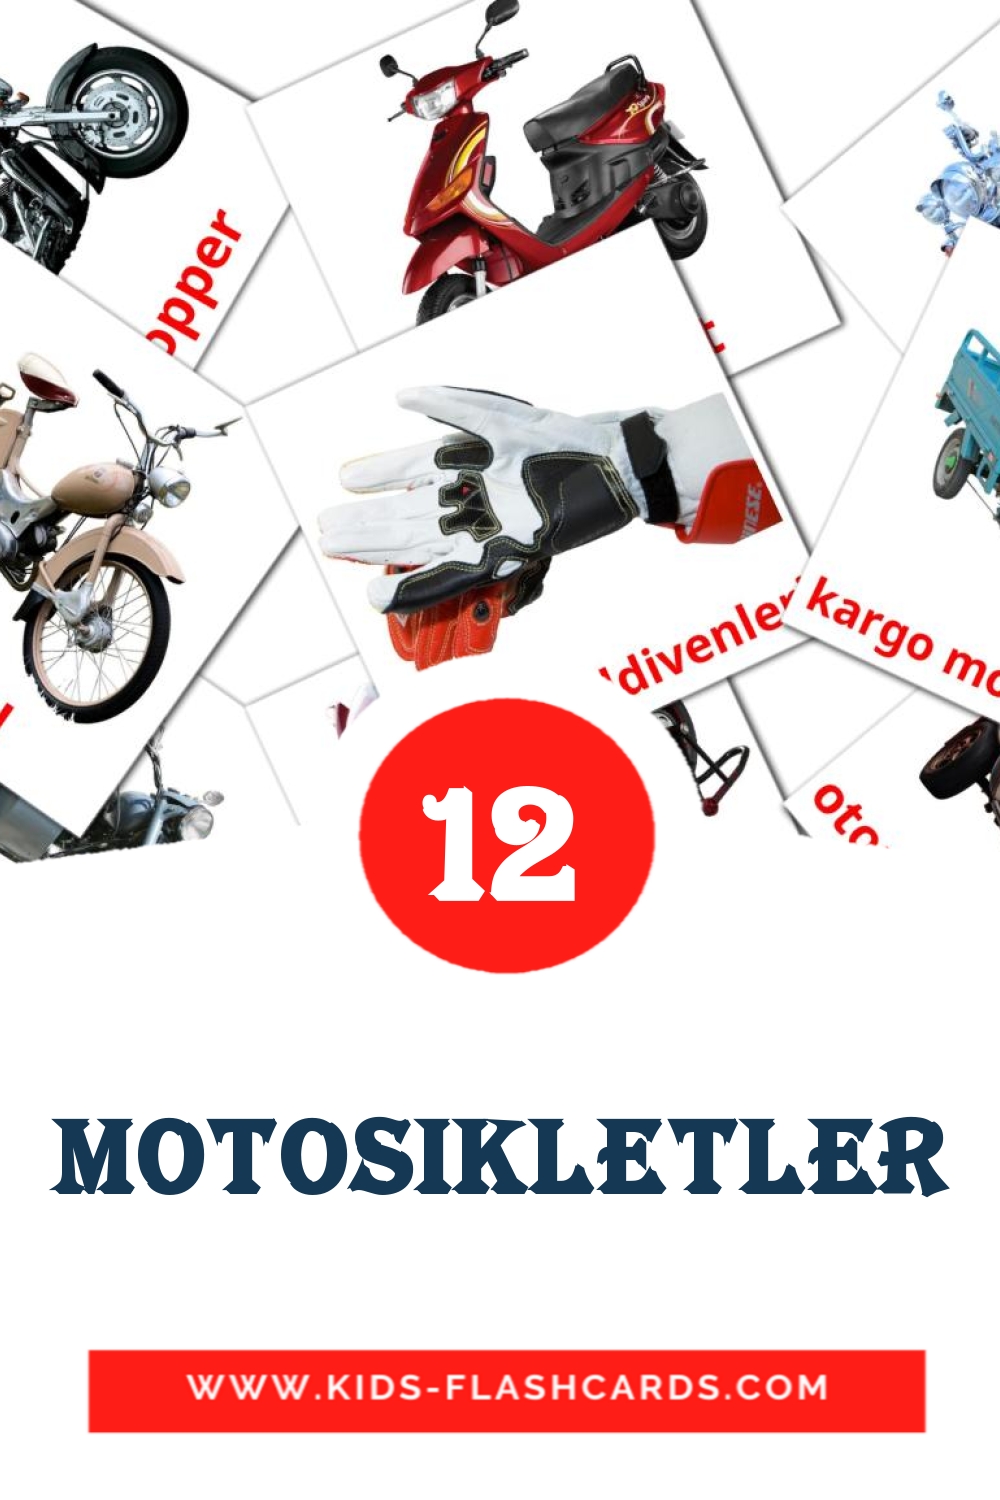 motosikletler на турецком для Детского Сада (14 карточек)